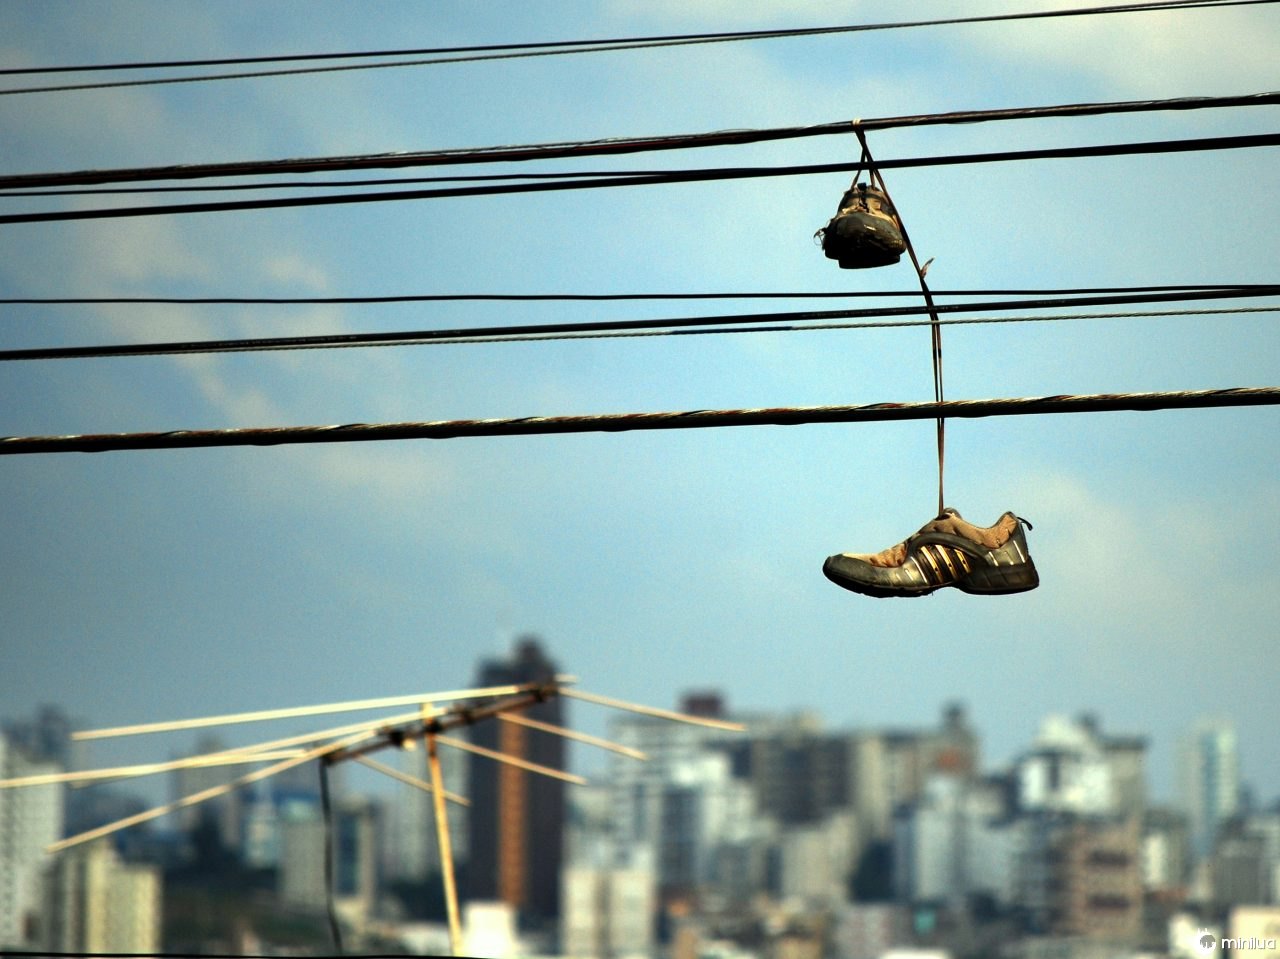  Vous avez certainement déjà vu une paire de baskets suspendue au fil électrique de la rue, mais qu'est-ce que cela signifie ?